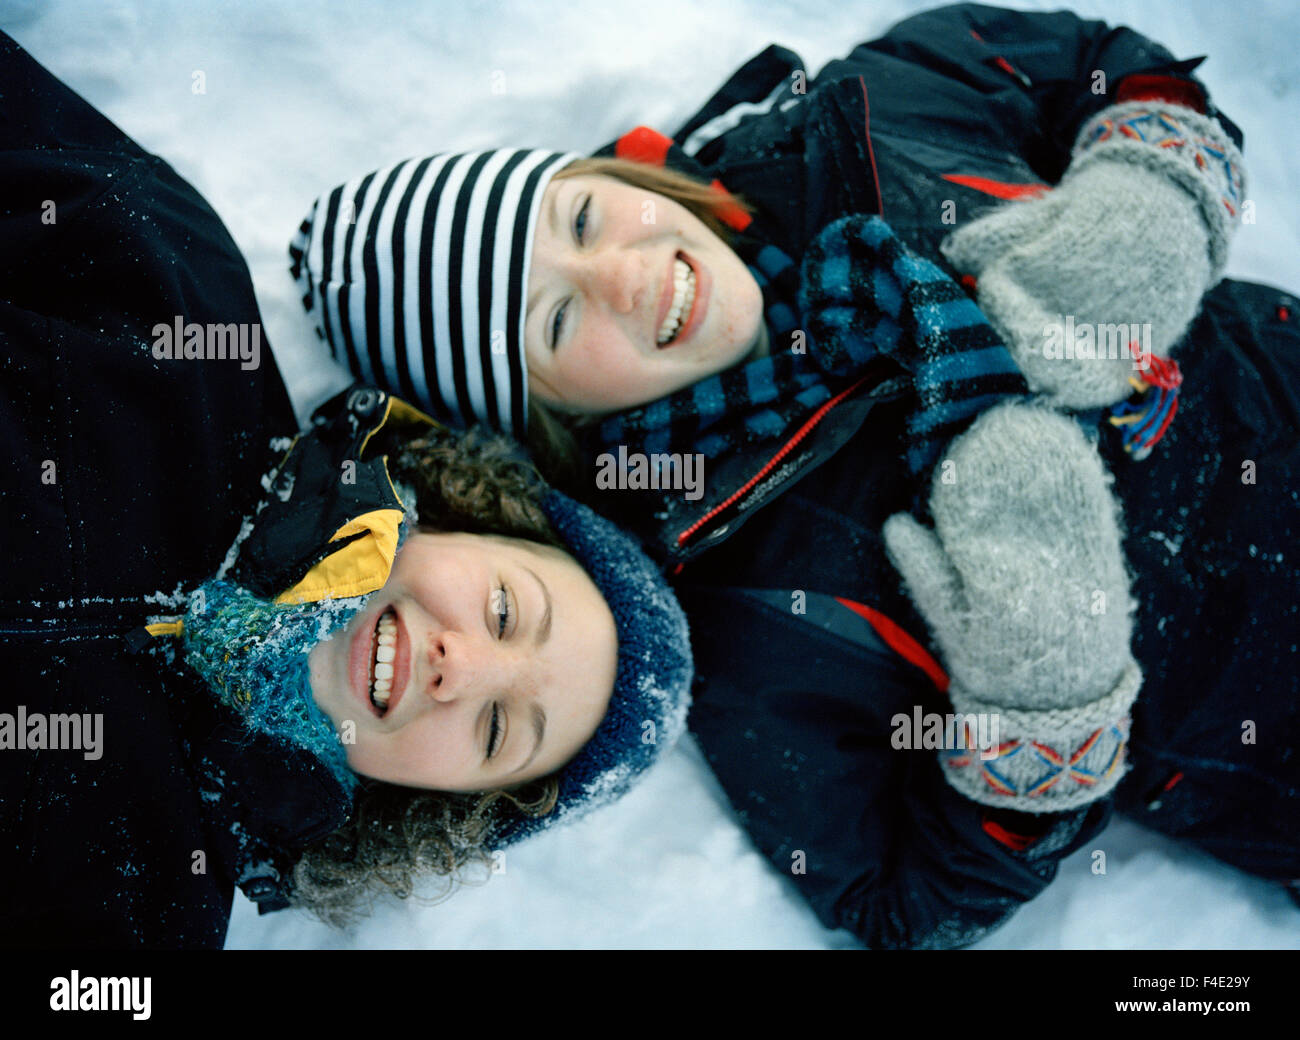 Zwei Mädchen im Teenageralter im Winter, Schweden. Stockfoto